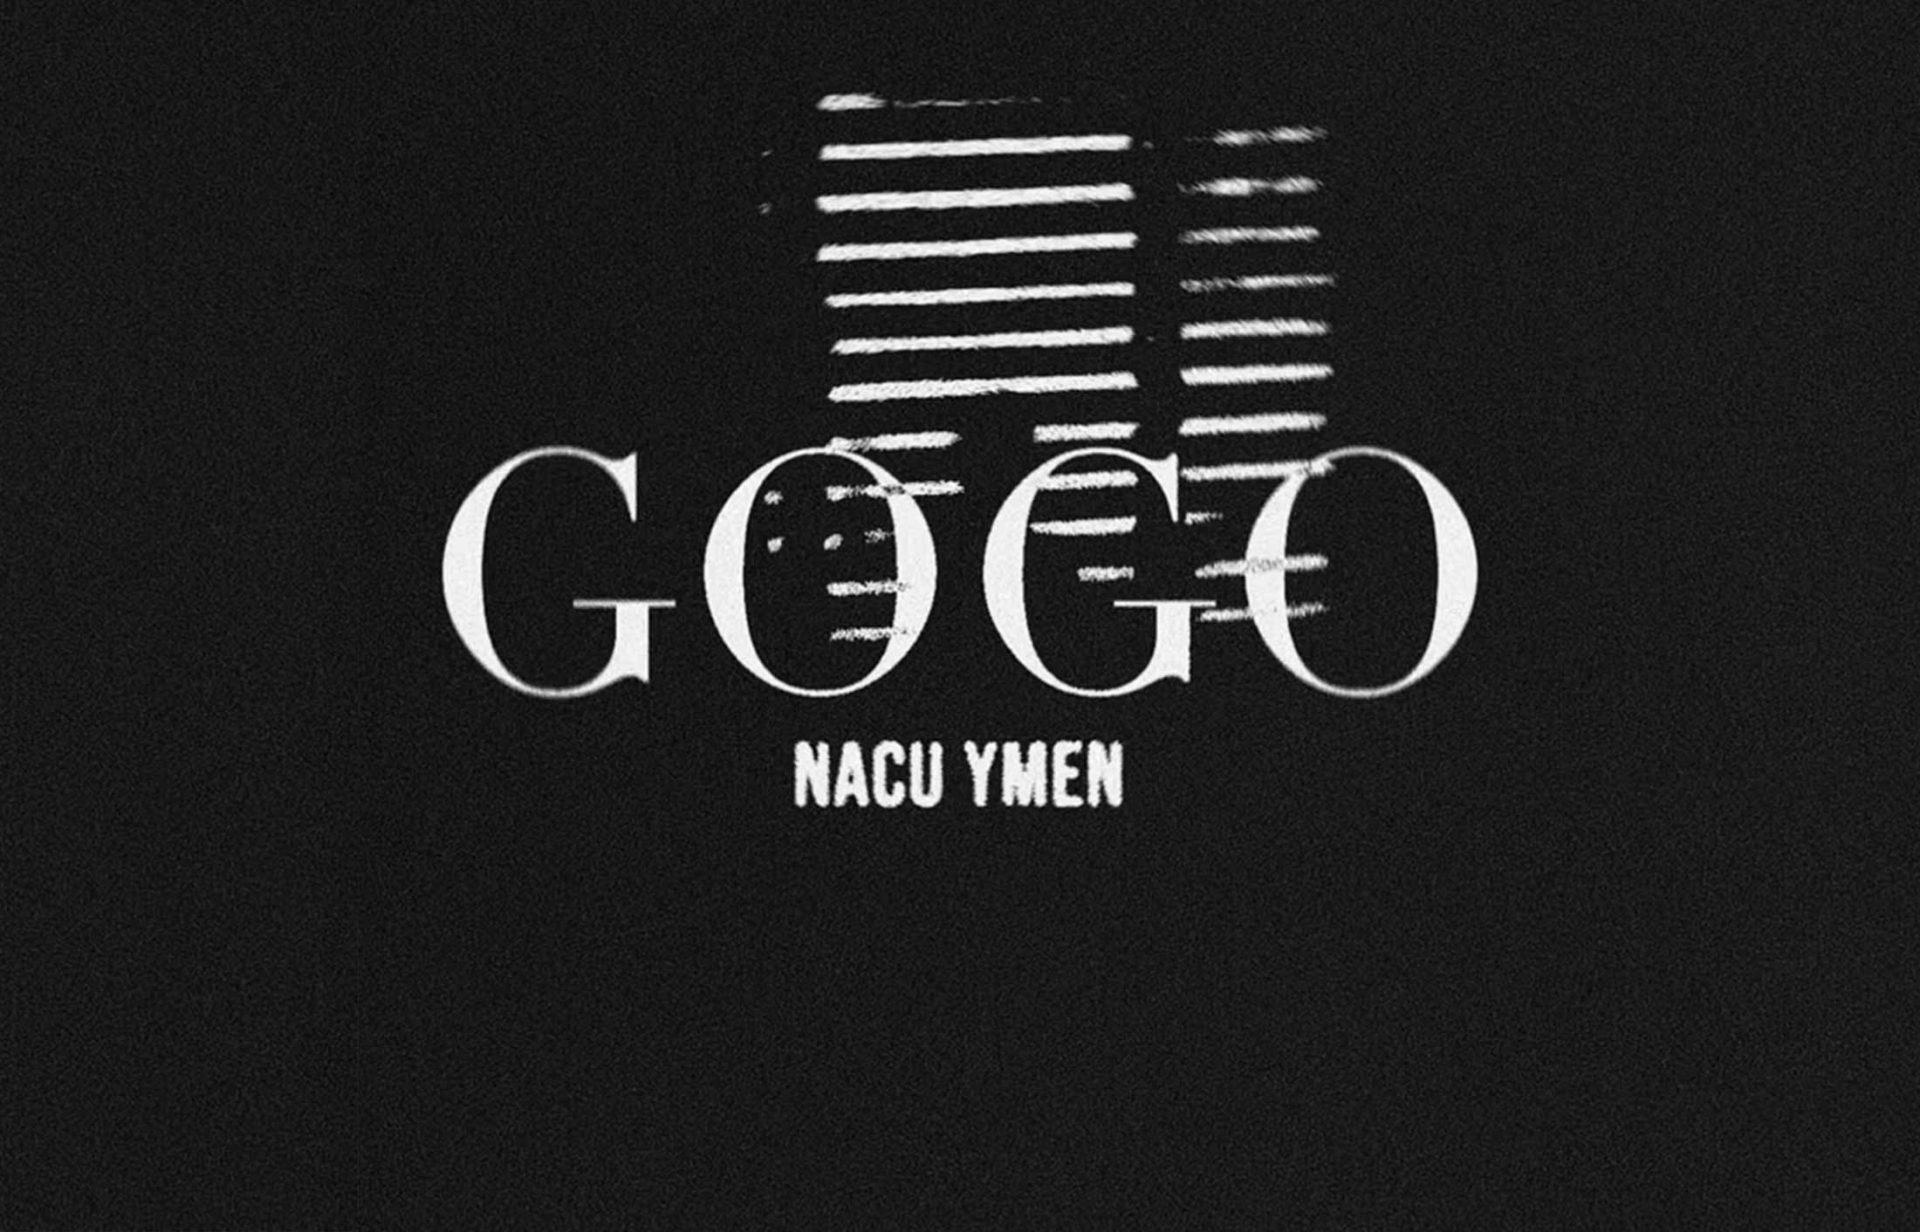 GOGO by Nauta